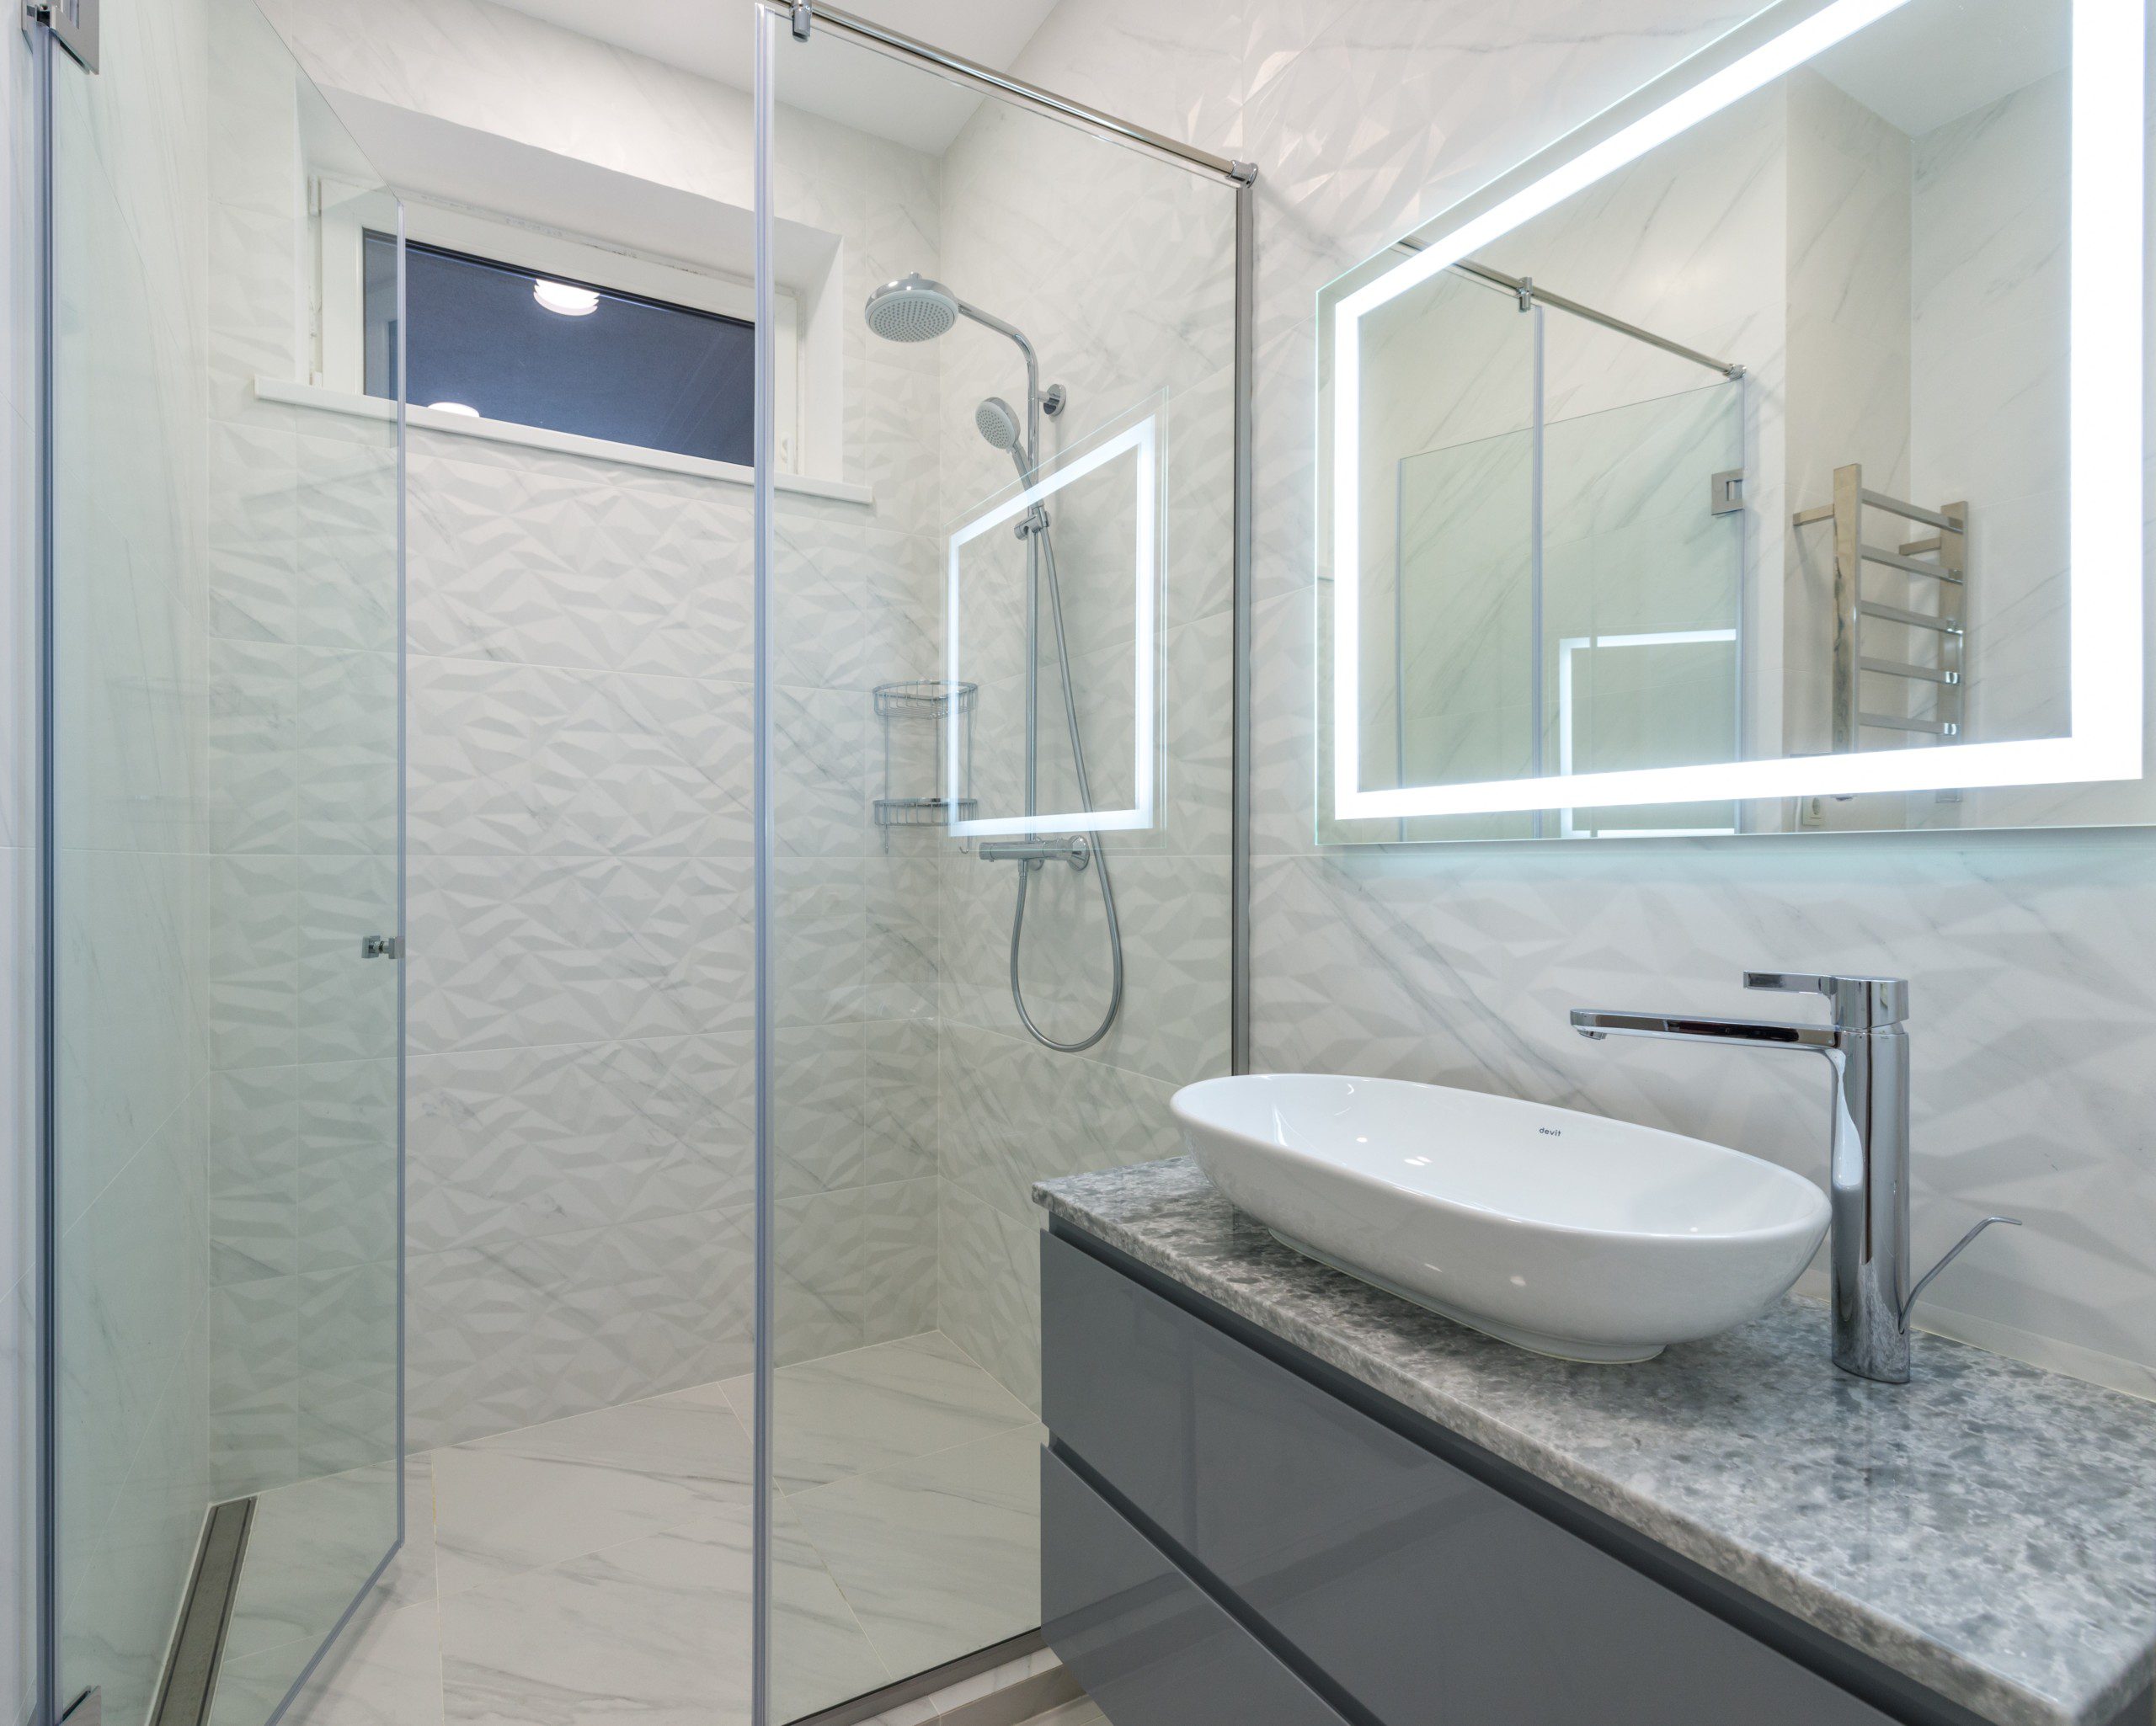 Imagem de um banheiro cinza com uma pia e o tampo de pedra de mármore, box de vidro e um chuveiro de aço inox